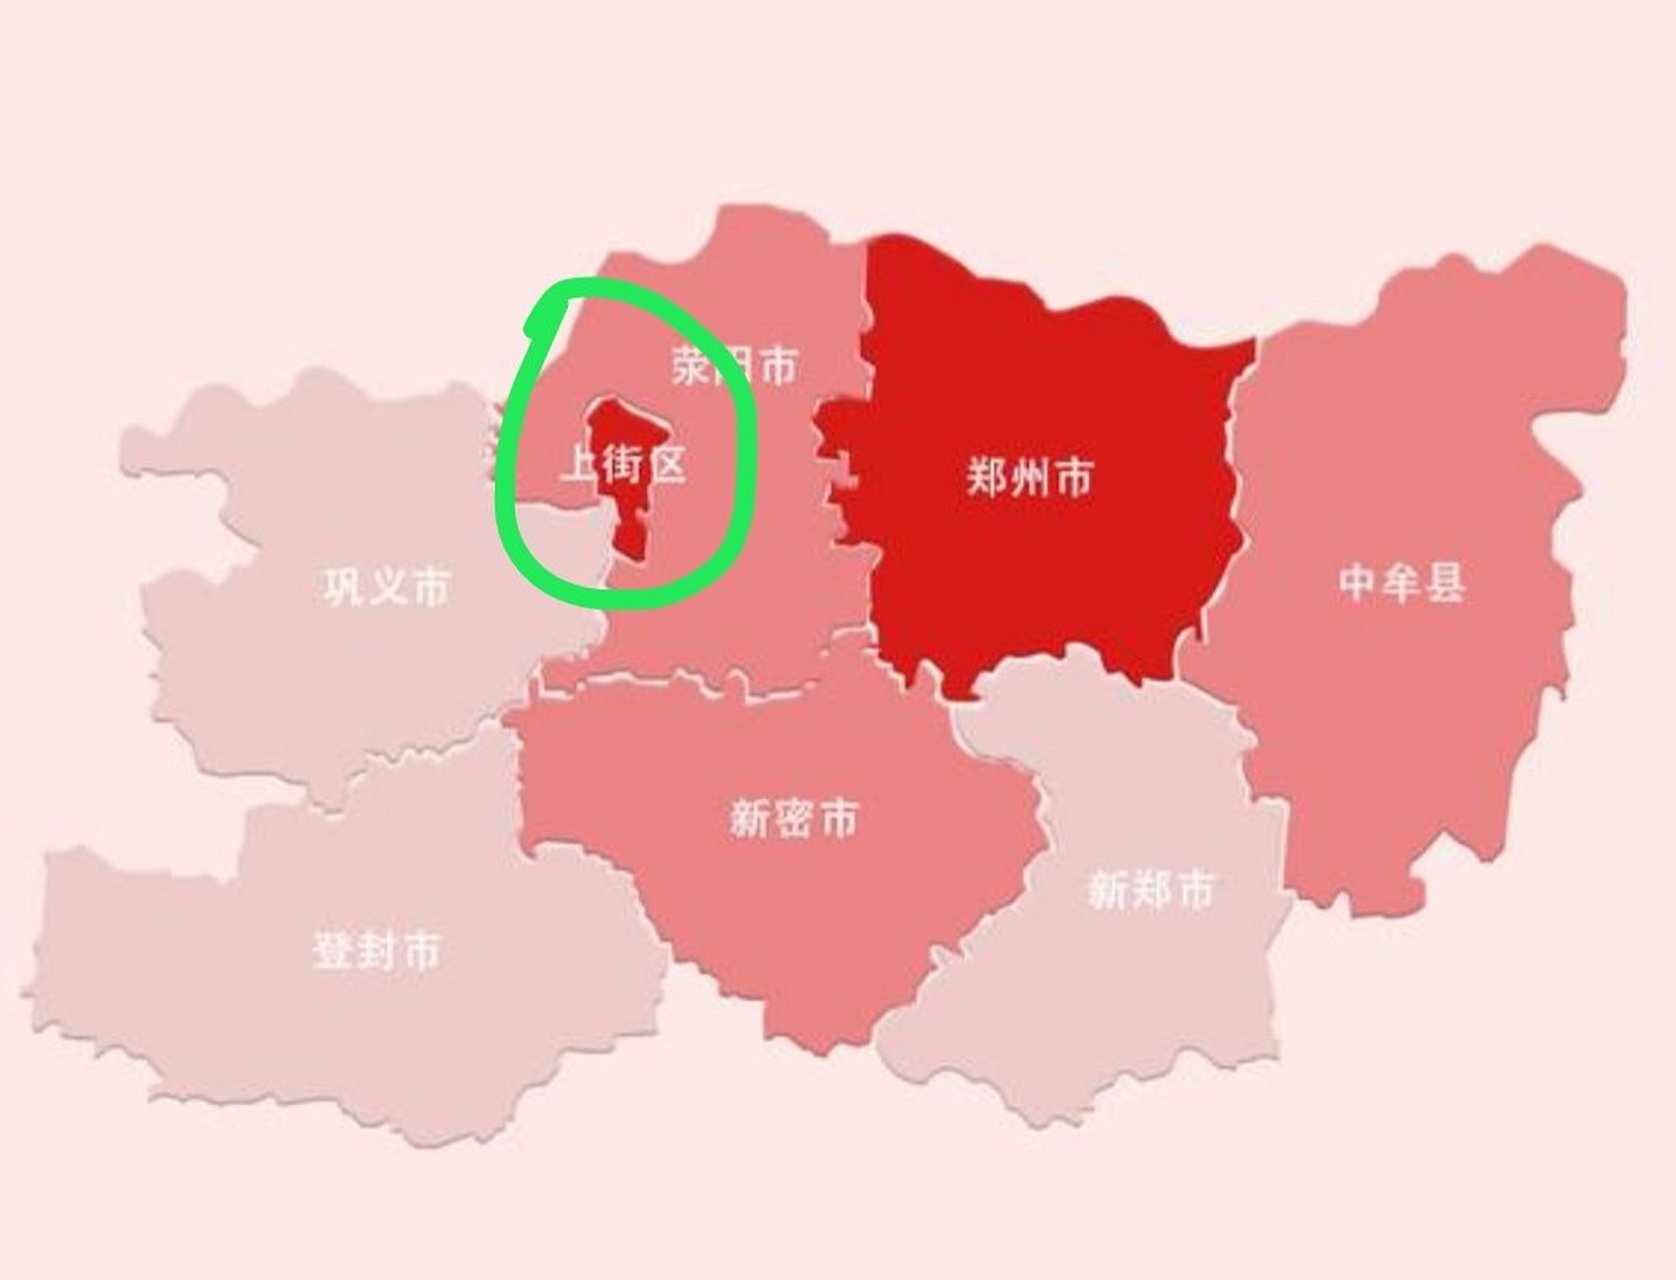 上街区,郑州市区的"飞地,为啥会在这里划为市区?